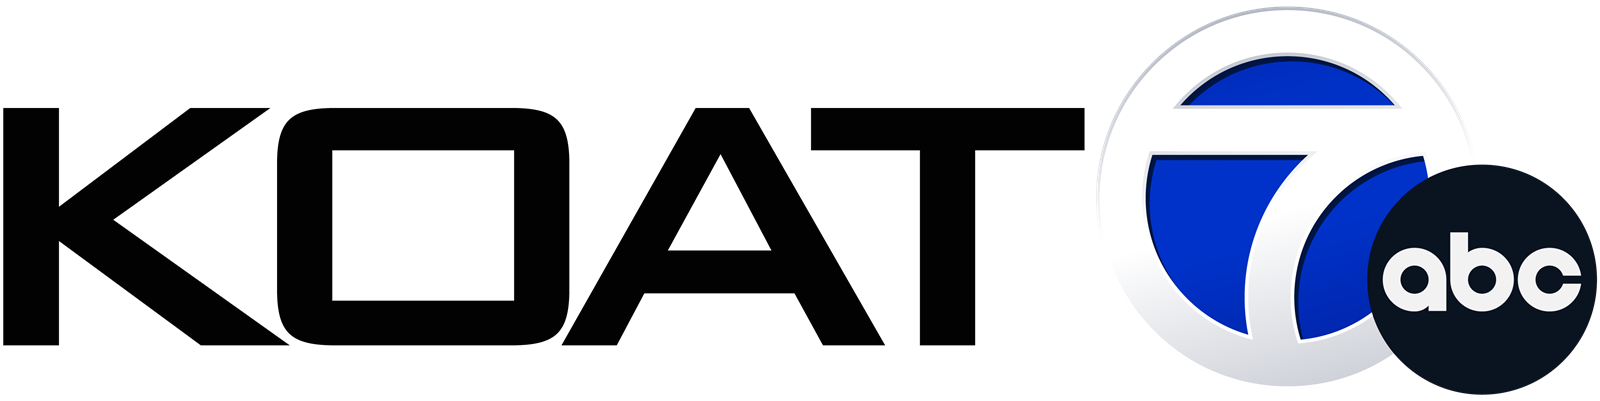 KOAT-logo.png